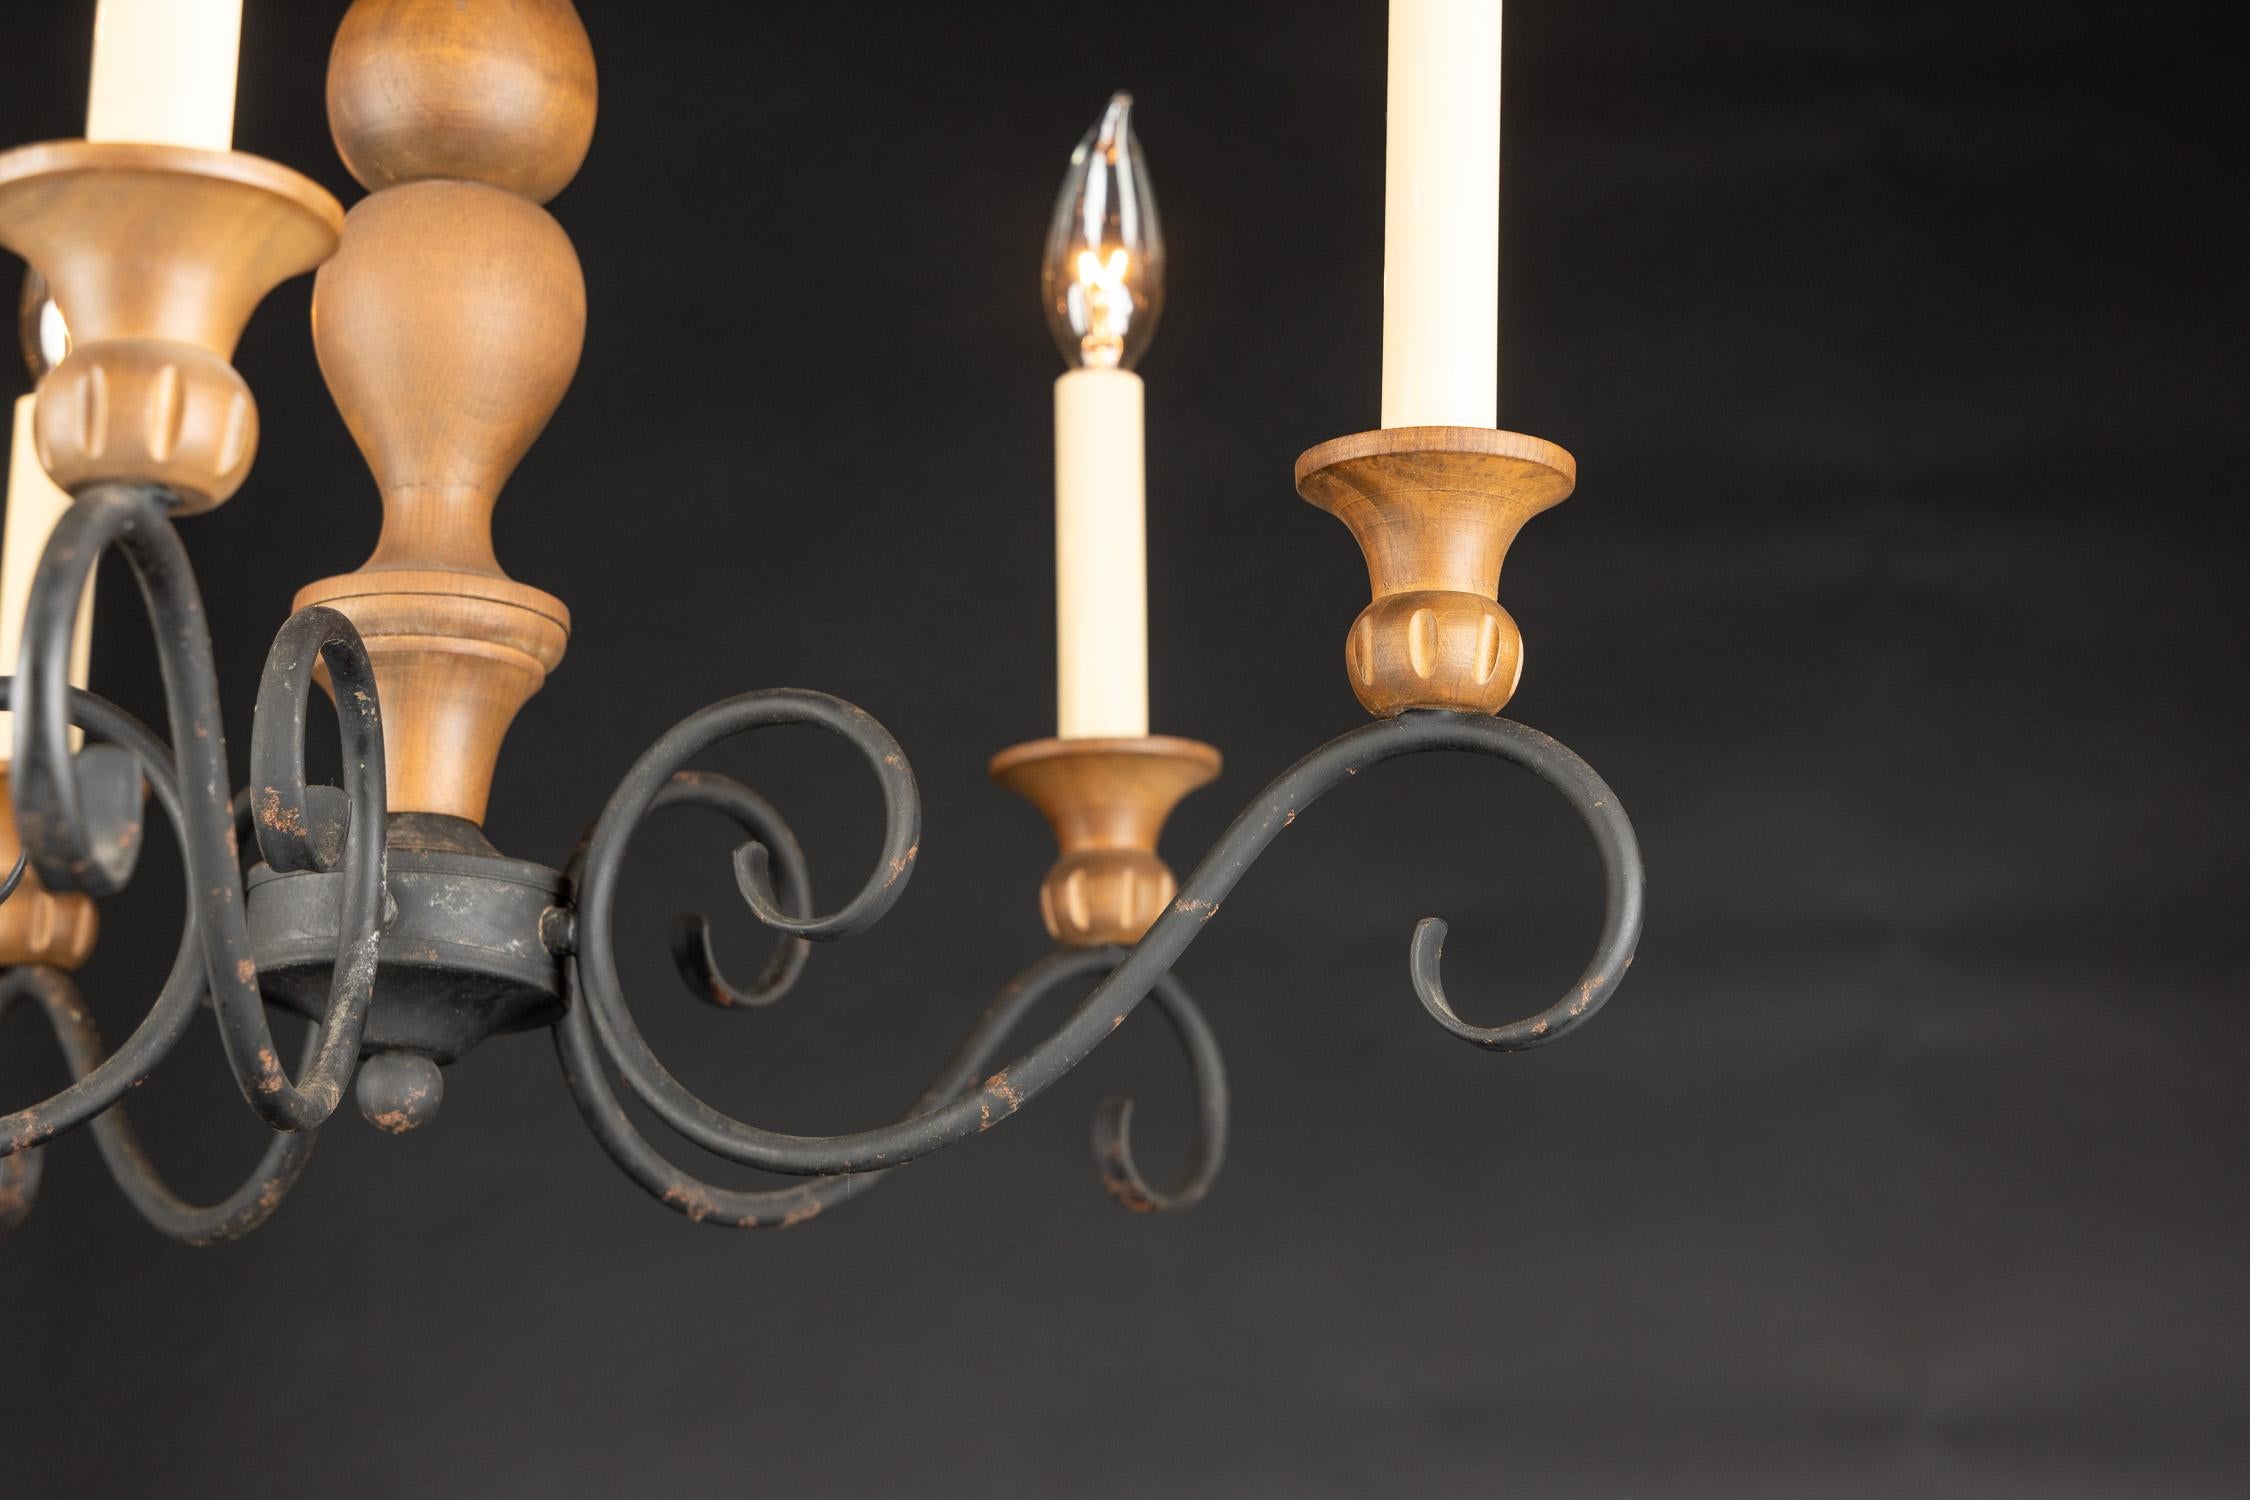 Lustre de campagne Louis XV de la fin du 19e siècle avec des bras en volute en fer, des chandeliers en bois sculpté et un centre en bois massif, suspendu par un crochet en fer au sommet.

Chaque pièce de notre magasin est recâblée